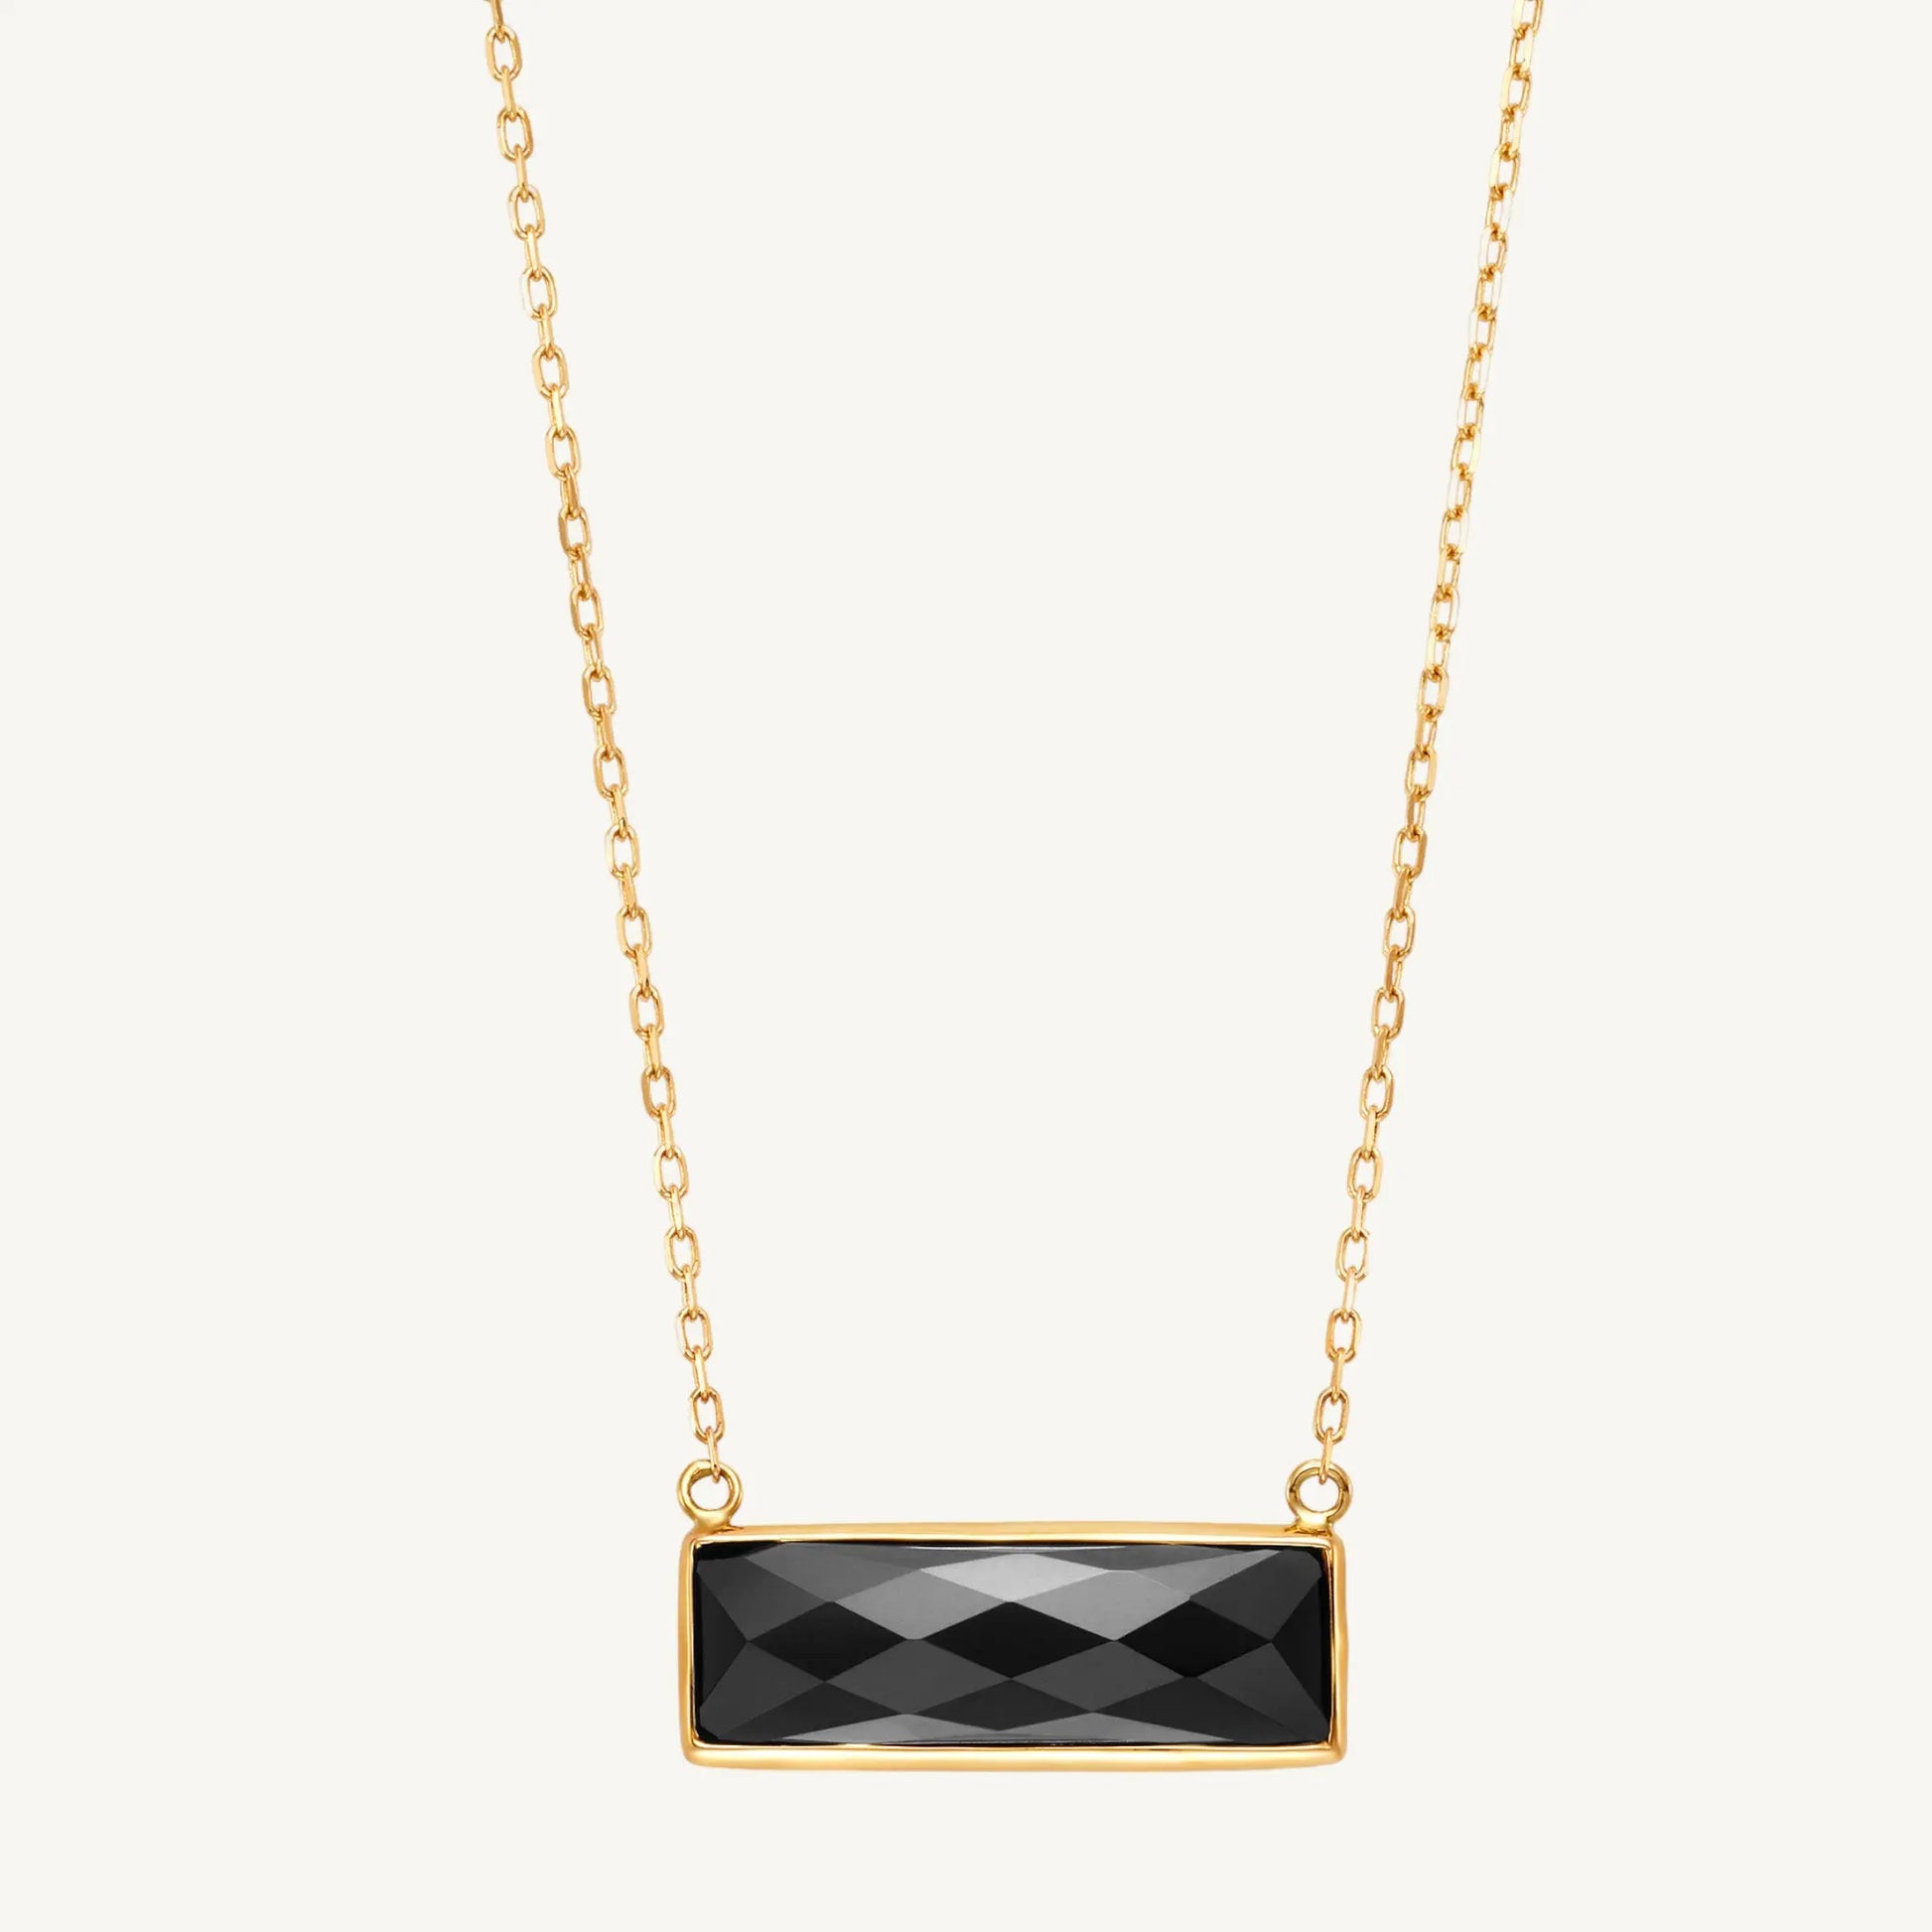 Thara Black Onyx Necklace 18" Jewelmak Shop